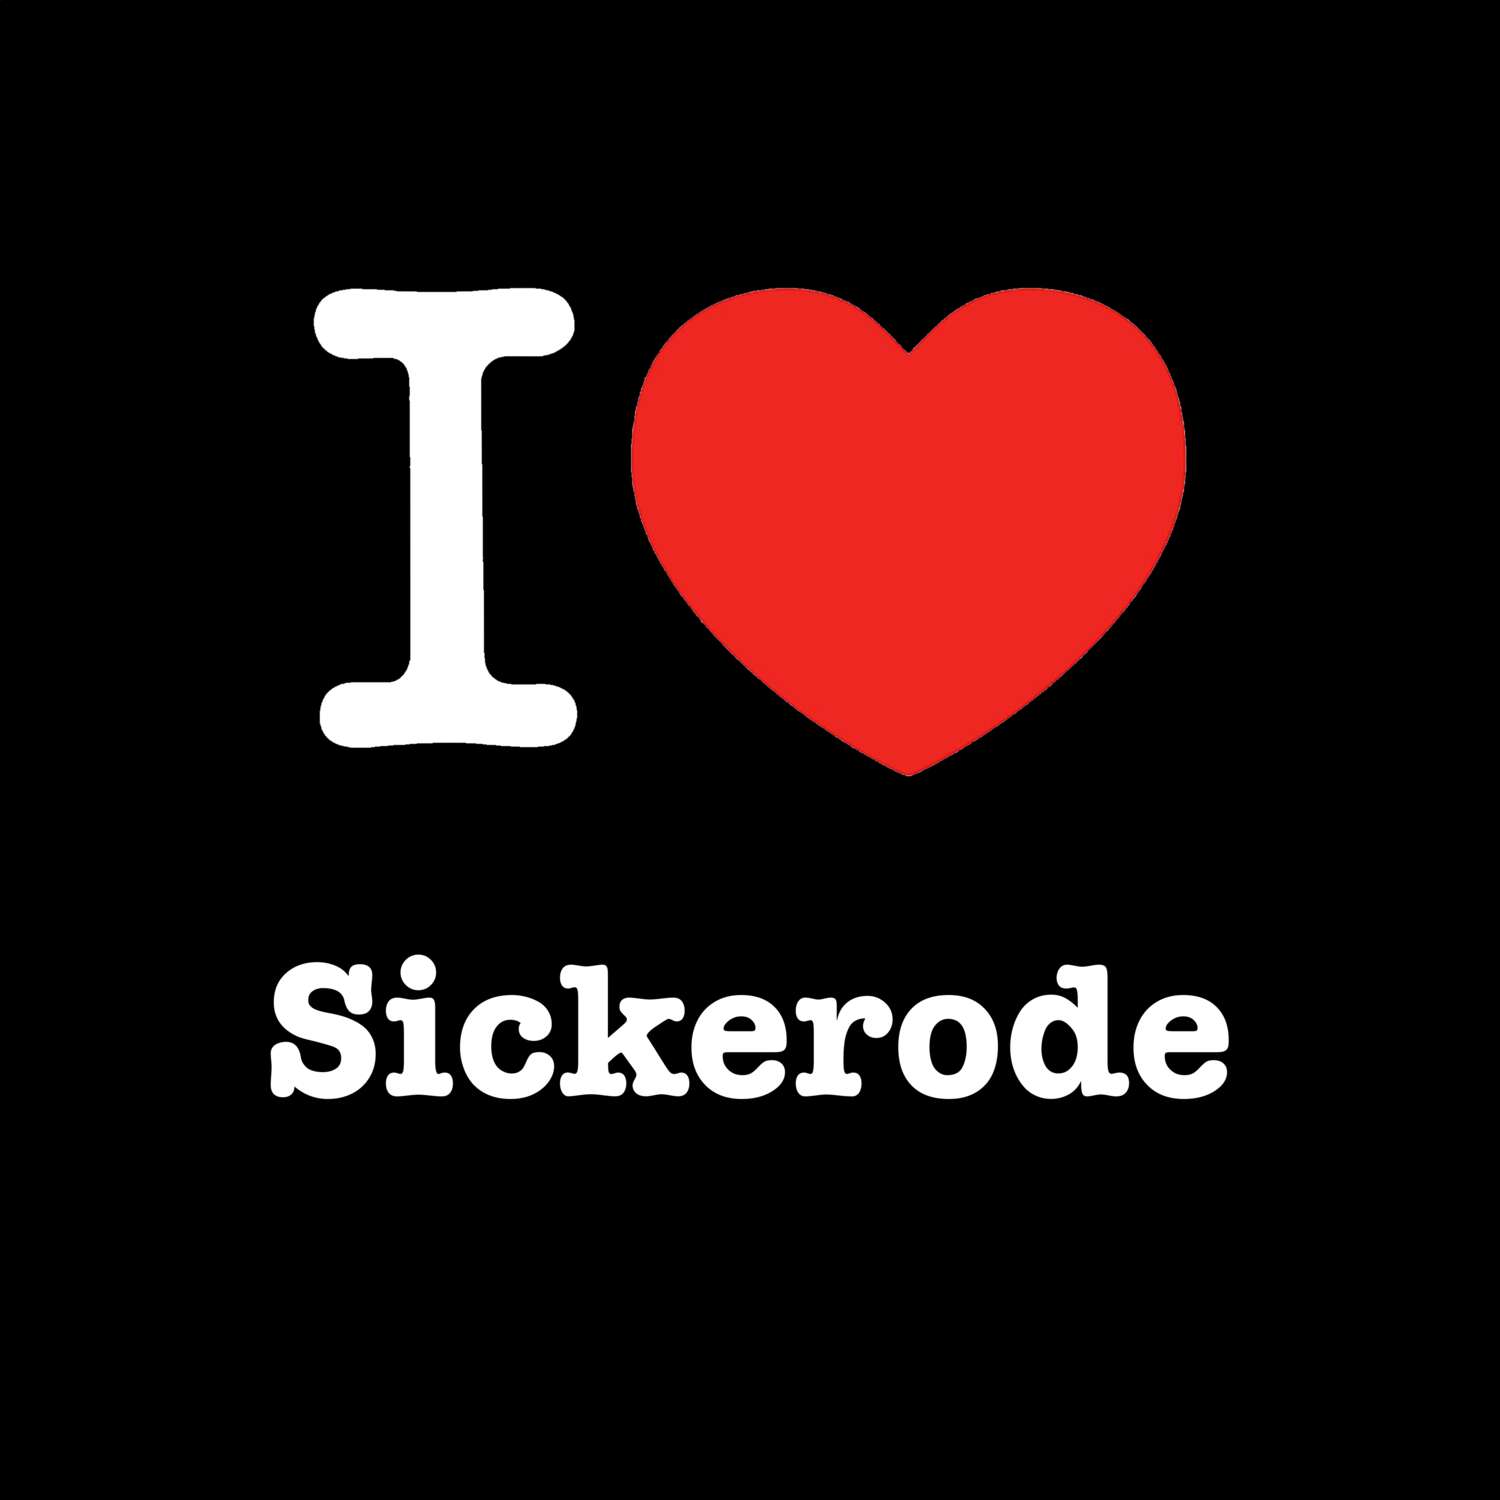 Sickerode T-Shirt »I love«